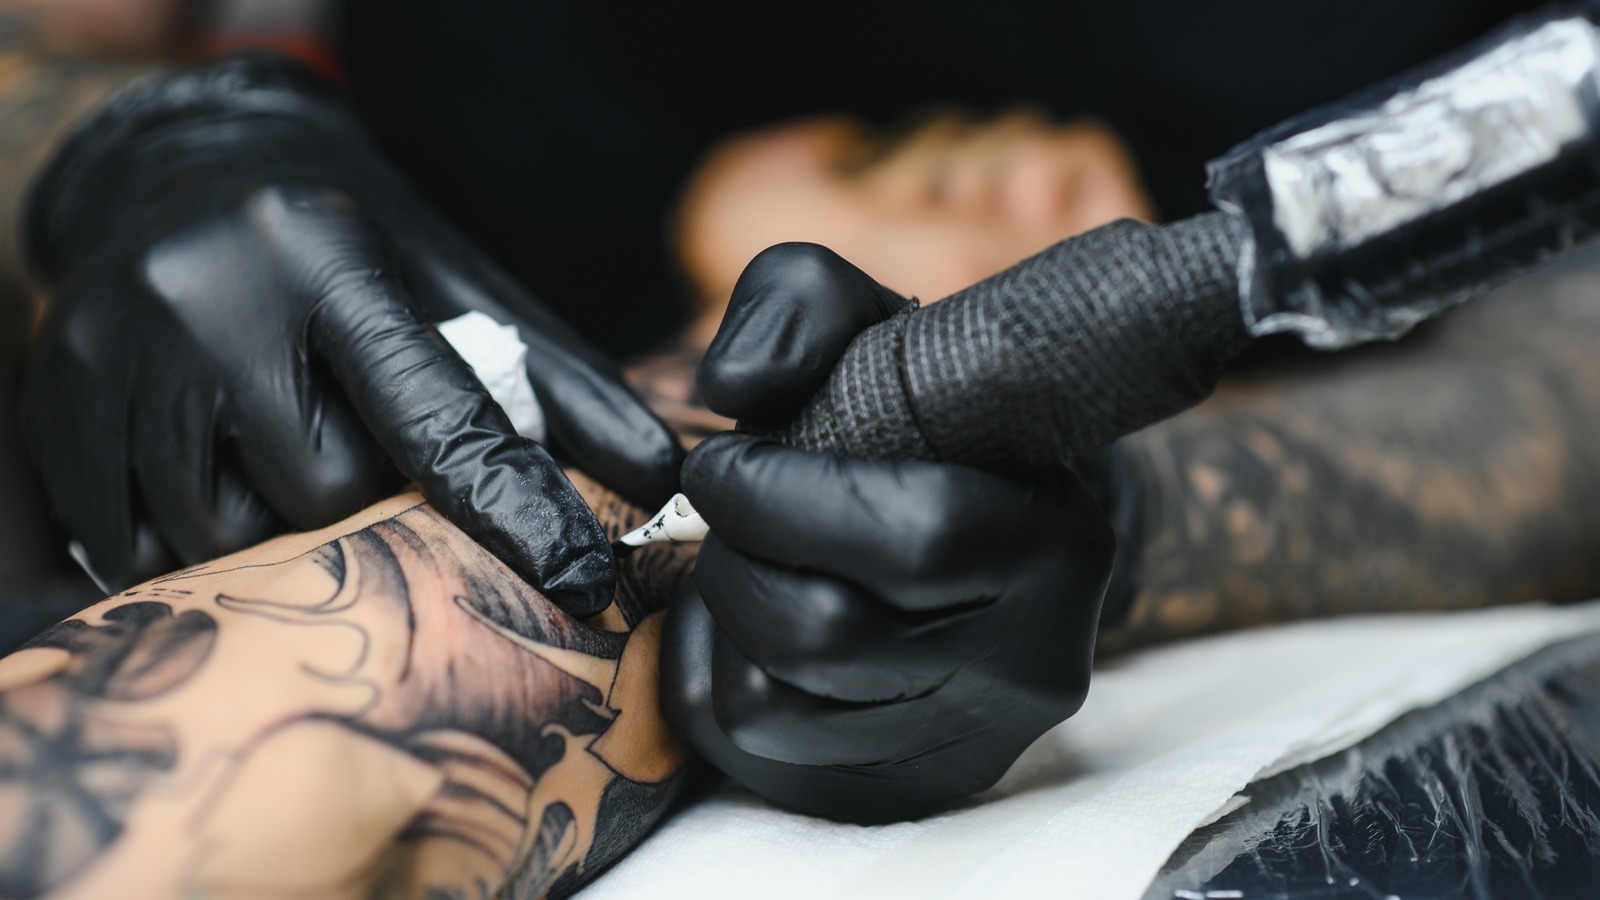 Blackout! – Portfolio of A Montreal Tattoo Artist